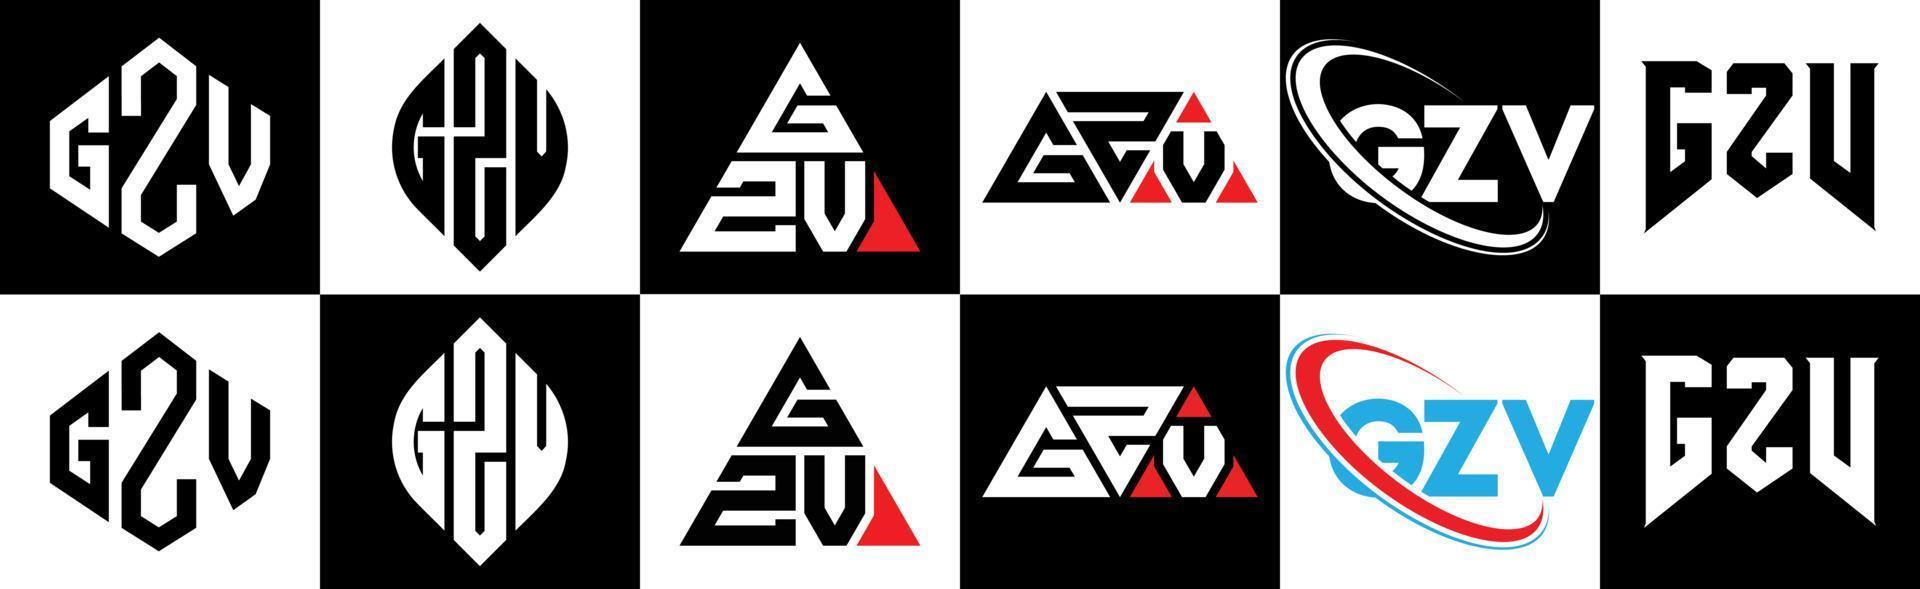 gzv-Buchstaben-Logo-Design in sechs Stilen. gzv polygon, kreis, dreieck, hexagon, flacher und einfacher stil mit schwarz-weißem buchstabenlogo in einer zeichenfläche. gzv minimalistisches und klassisches logo vektor